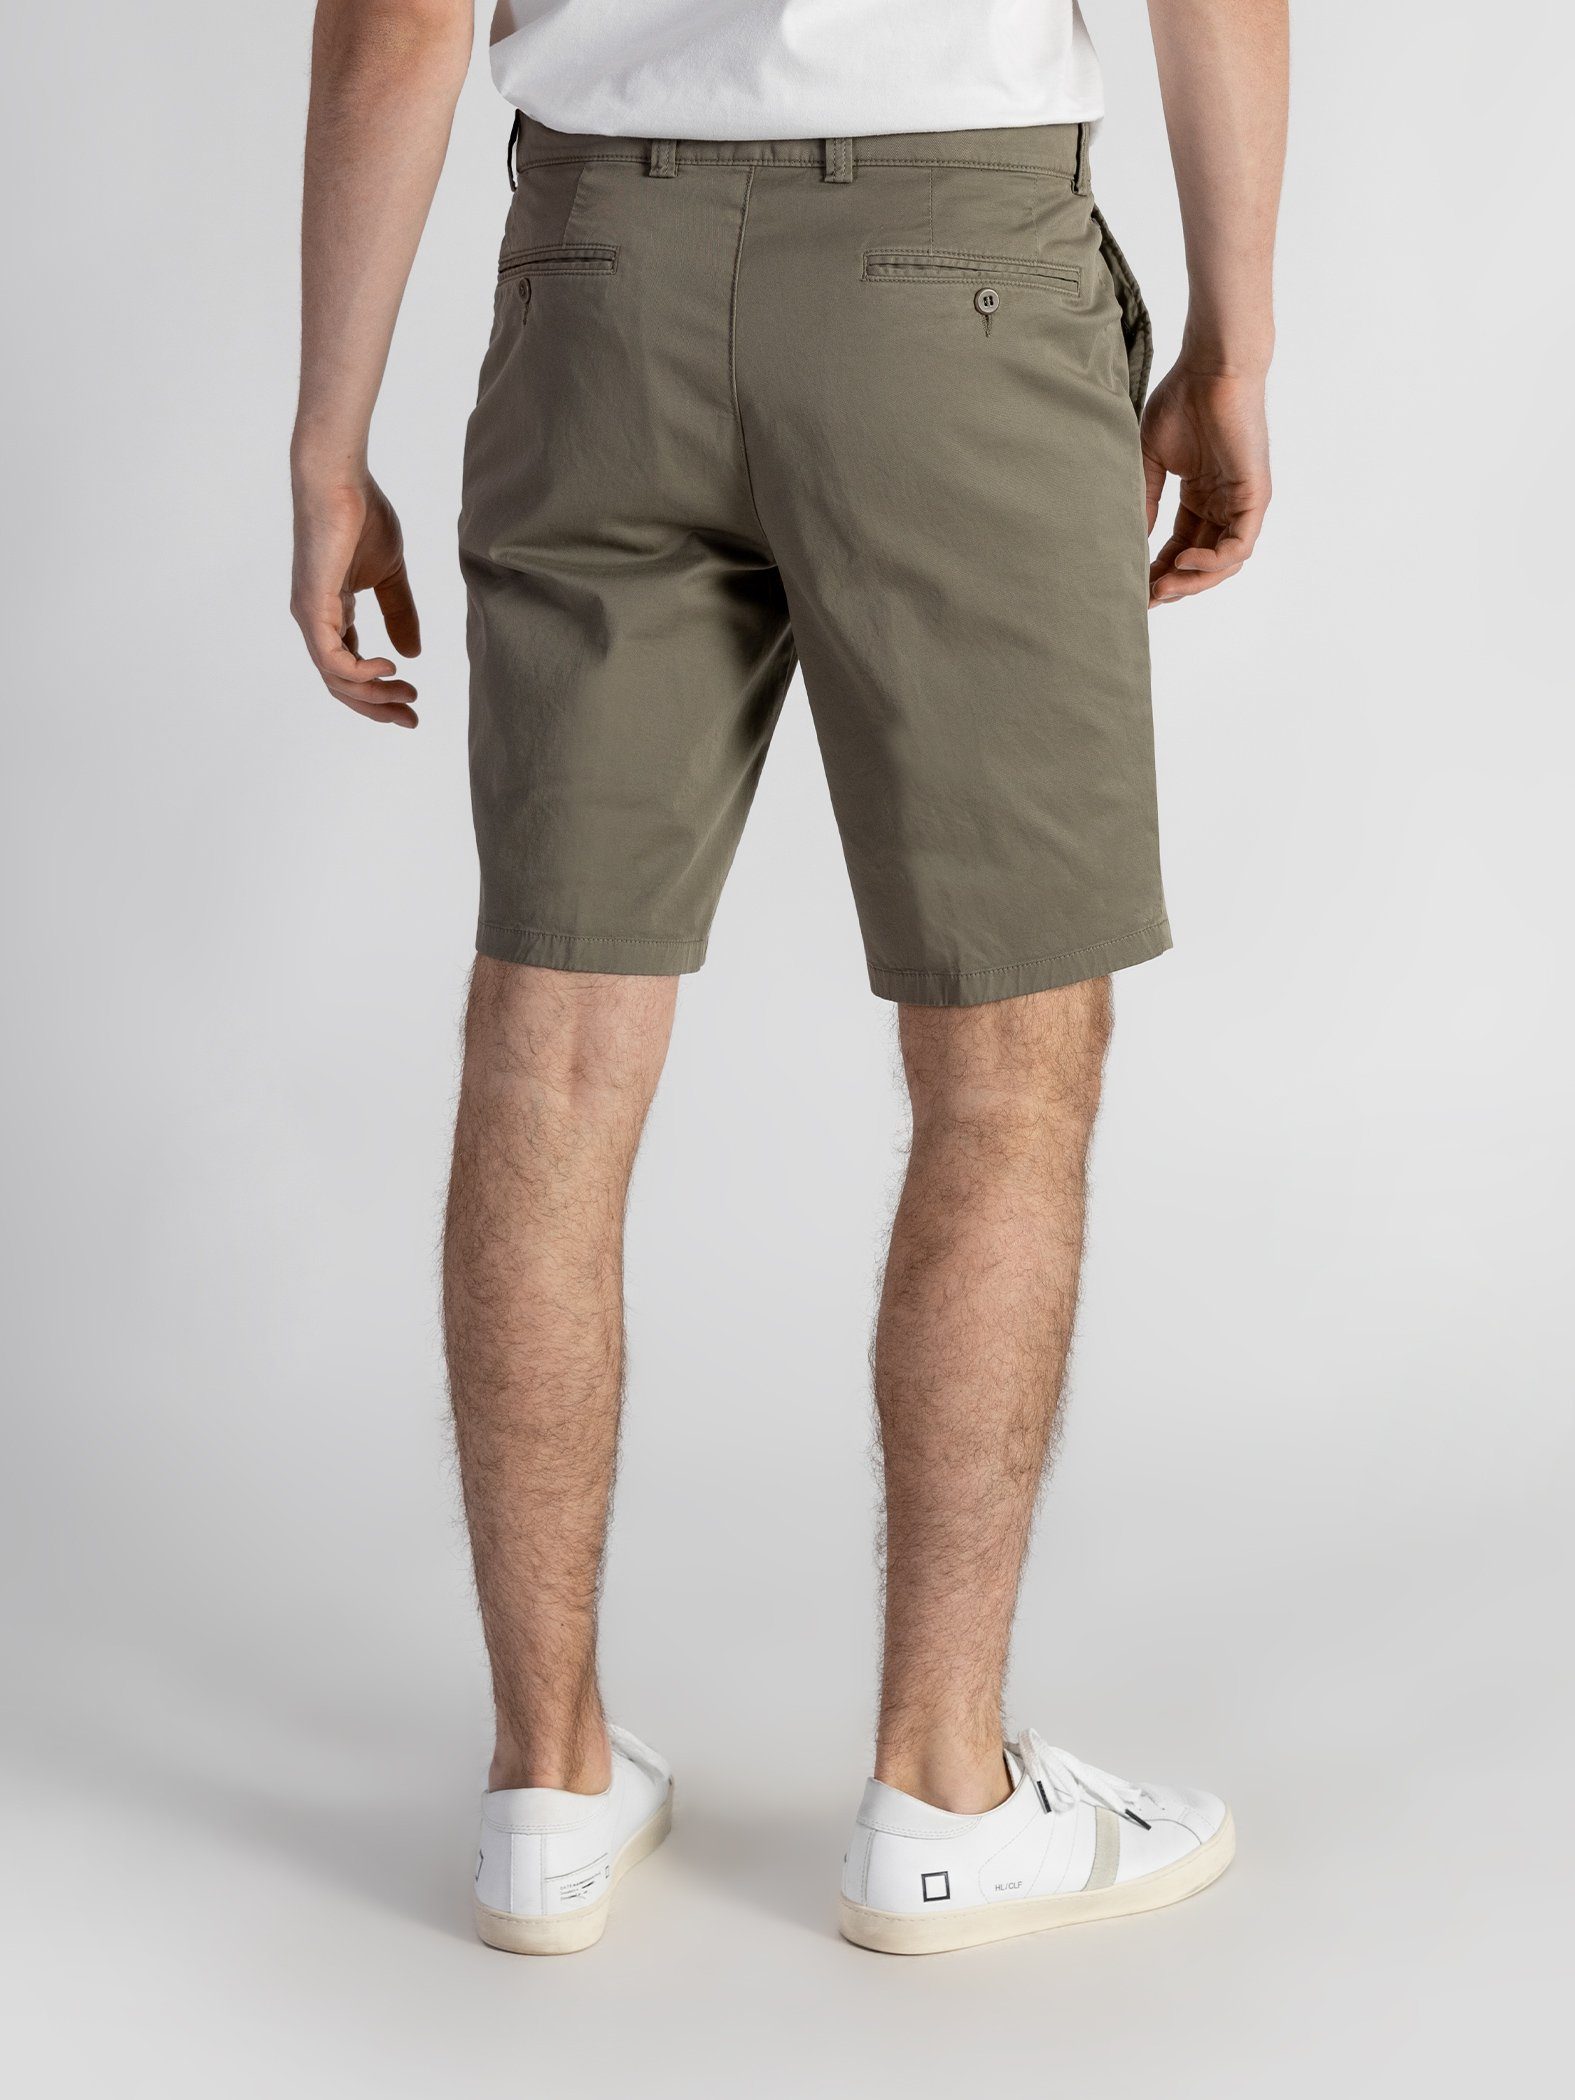 olivgrün TwoMates Shorts Farbauswahl, mit Shorts GOTS-zertifiziert Bund, elastischem